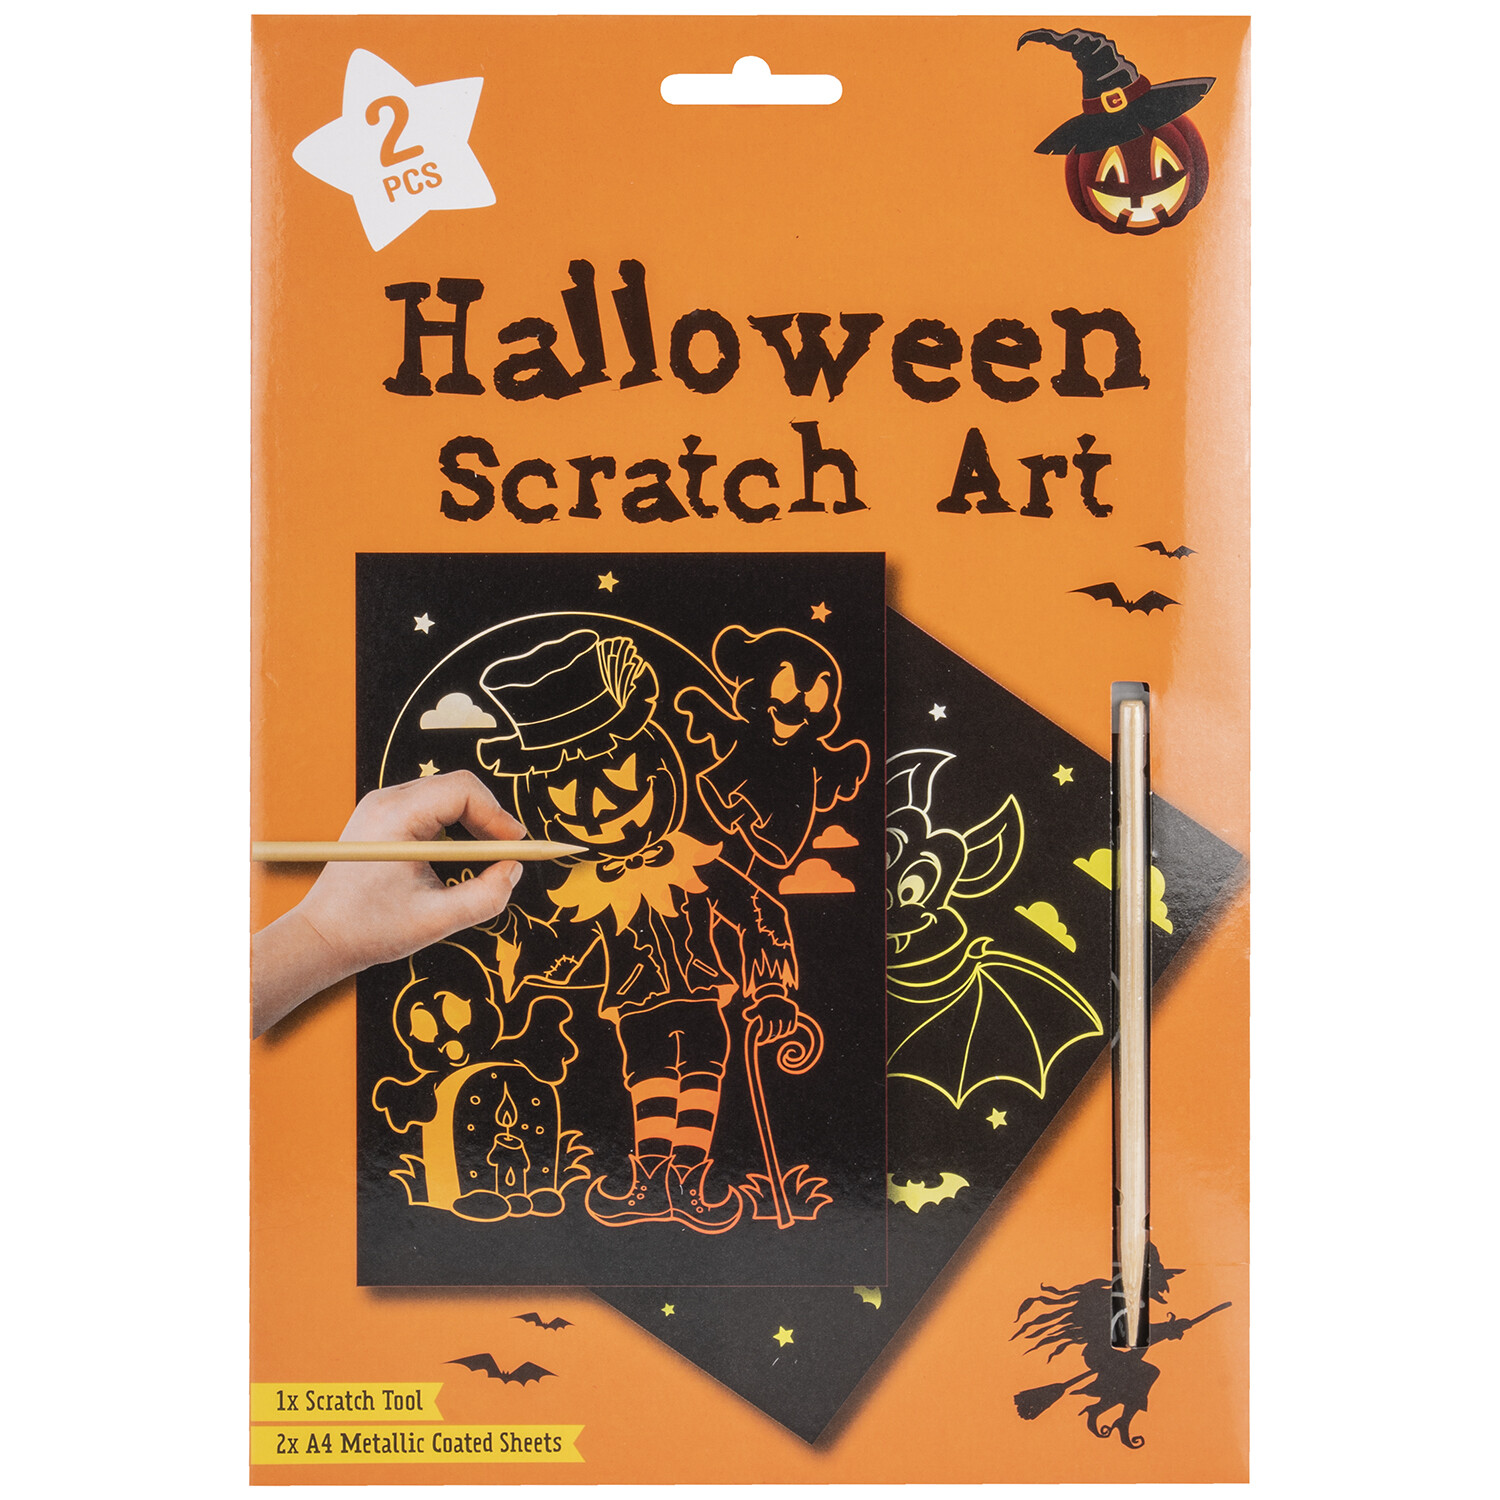 Halloween Scratch Art Image